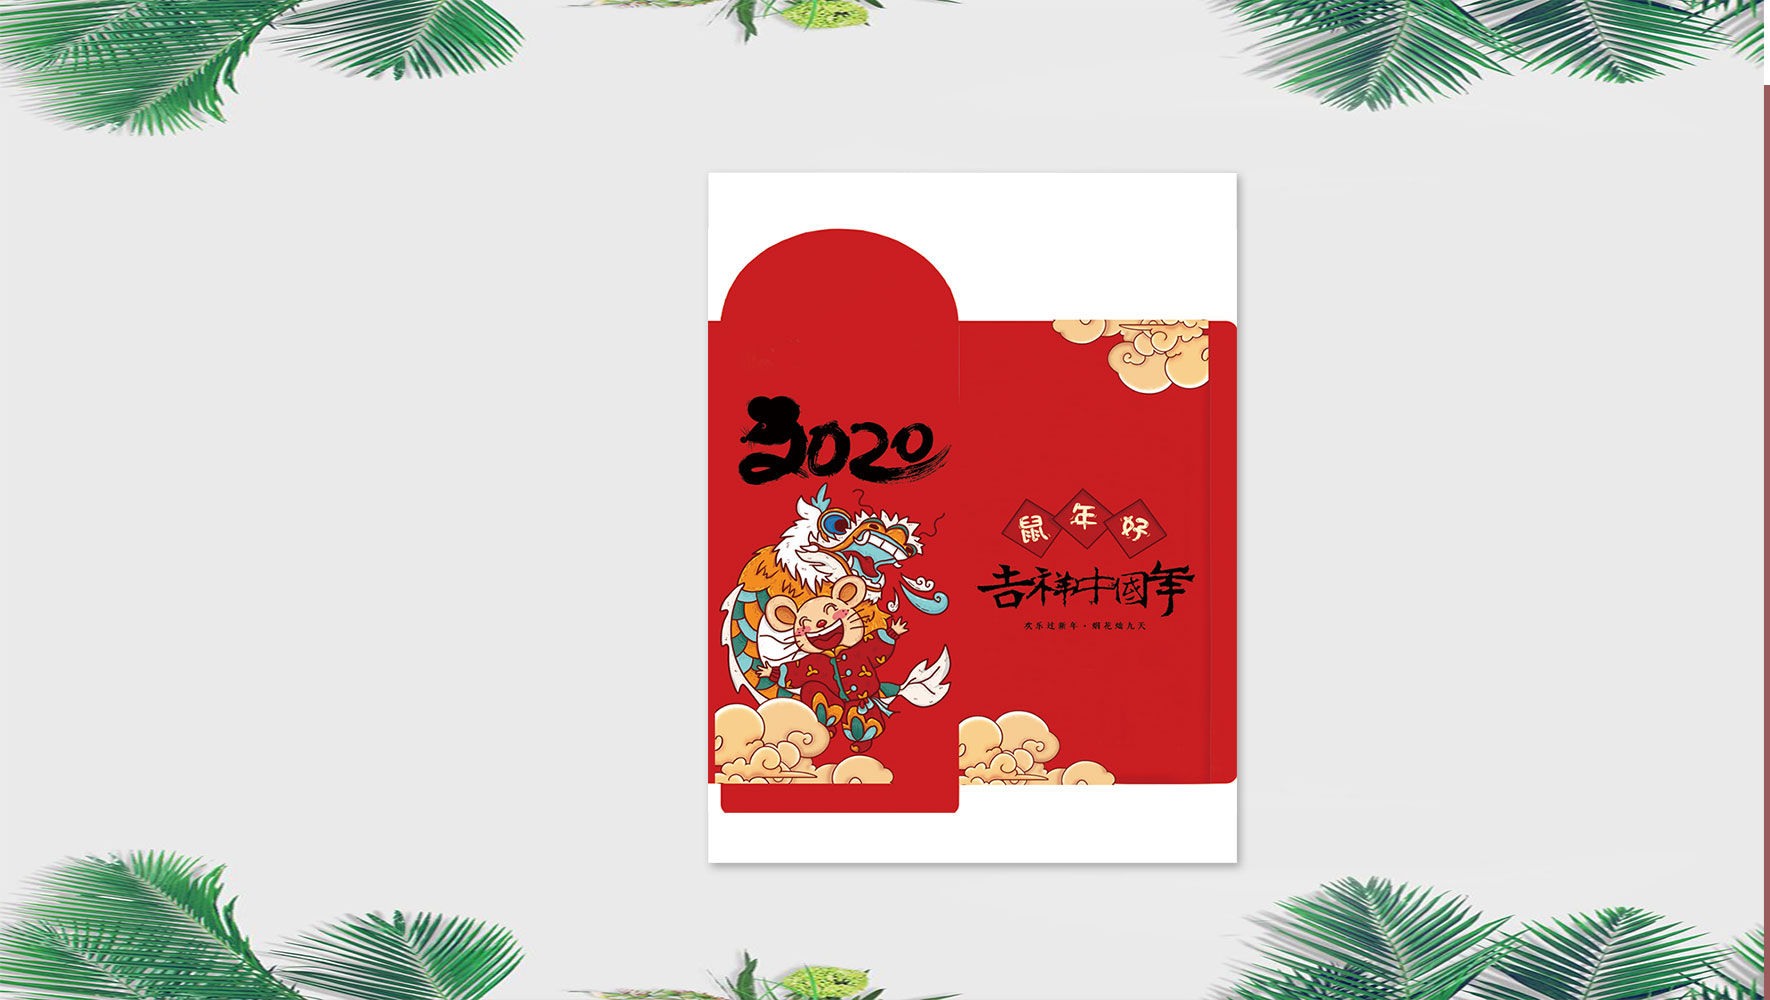 吉祥中国年PSD2020鼠年红包设计模板